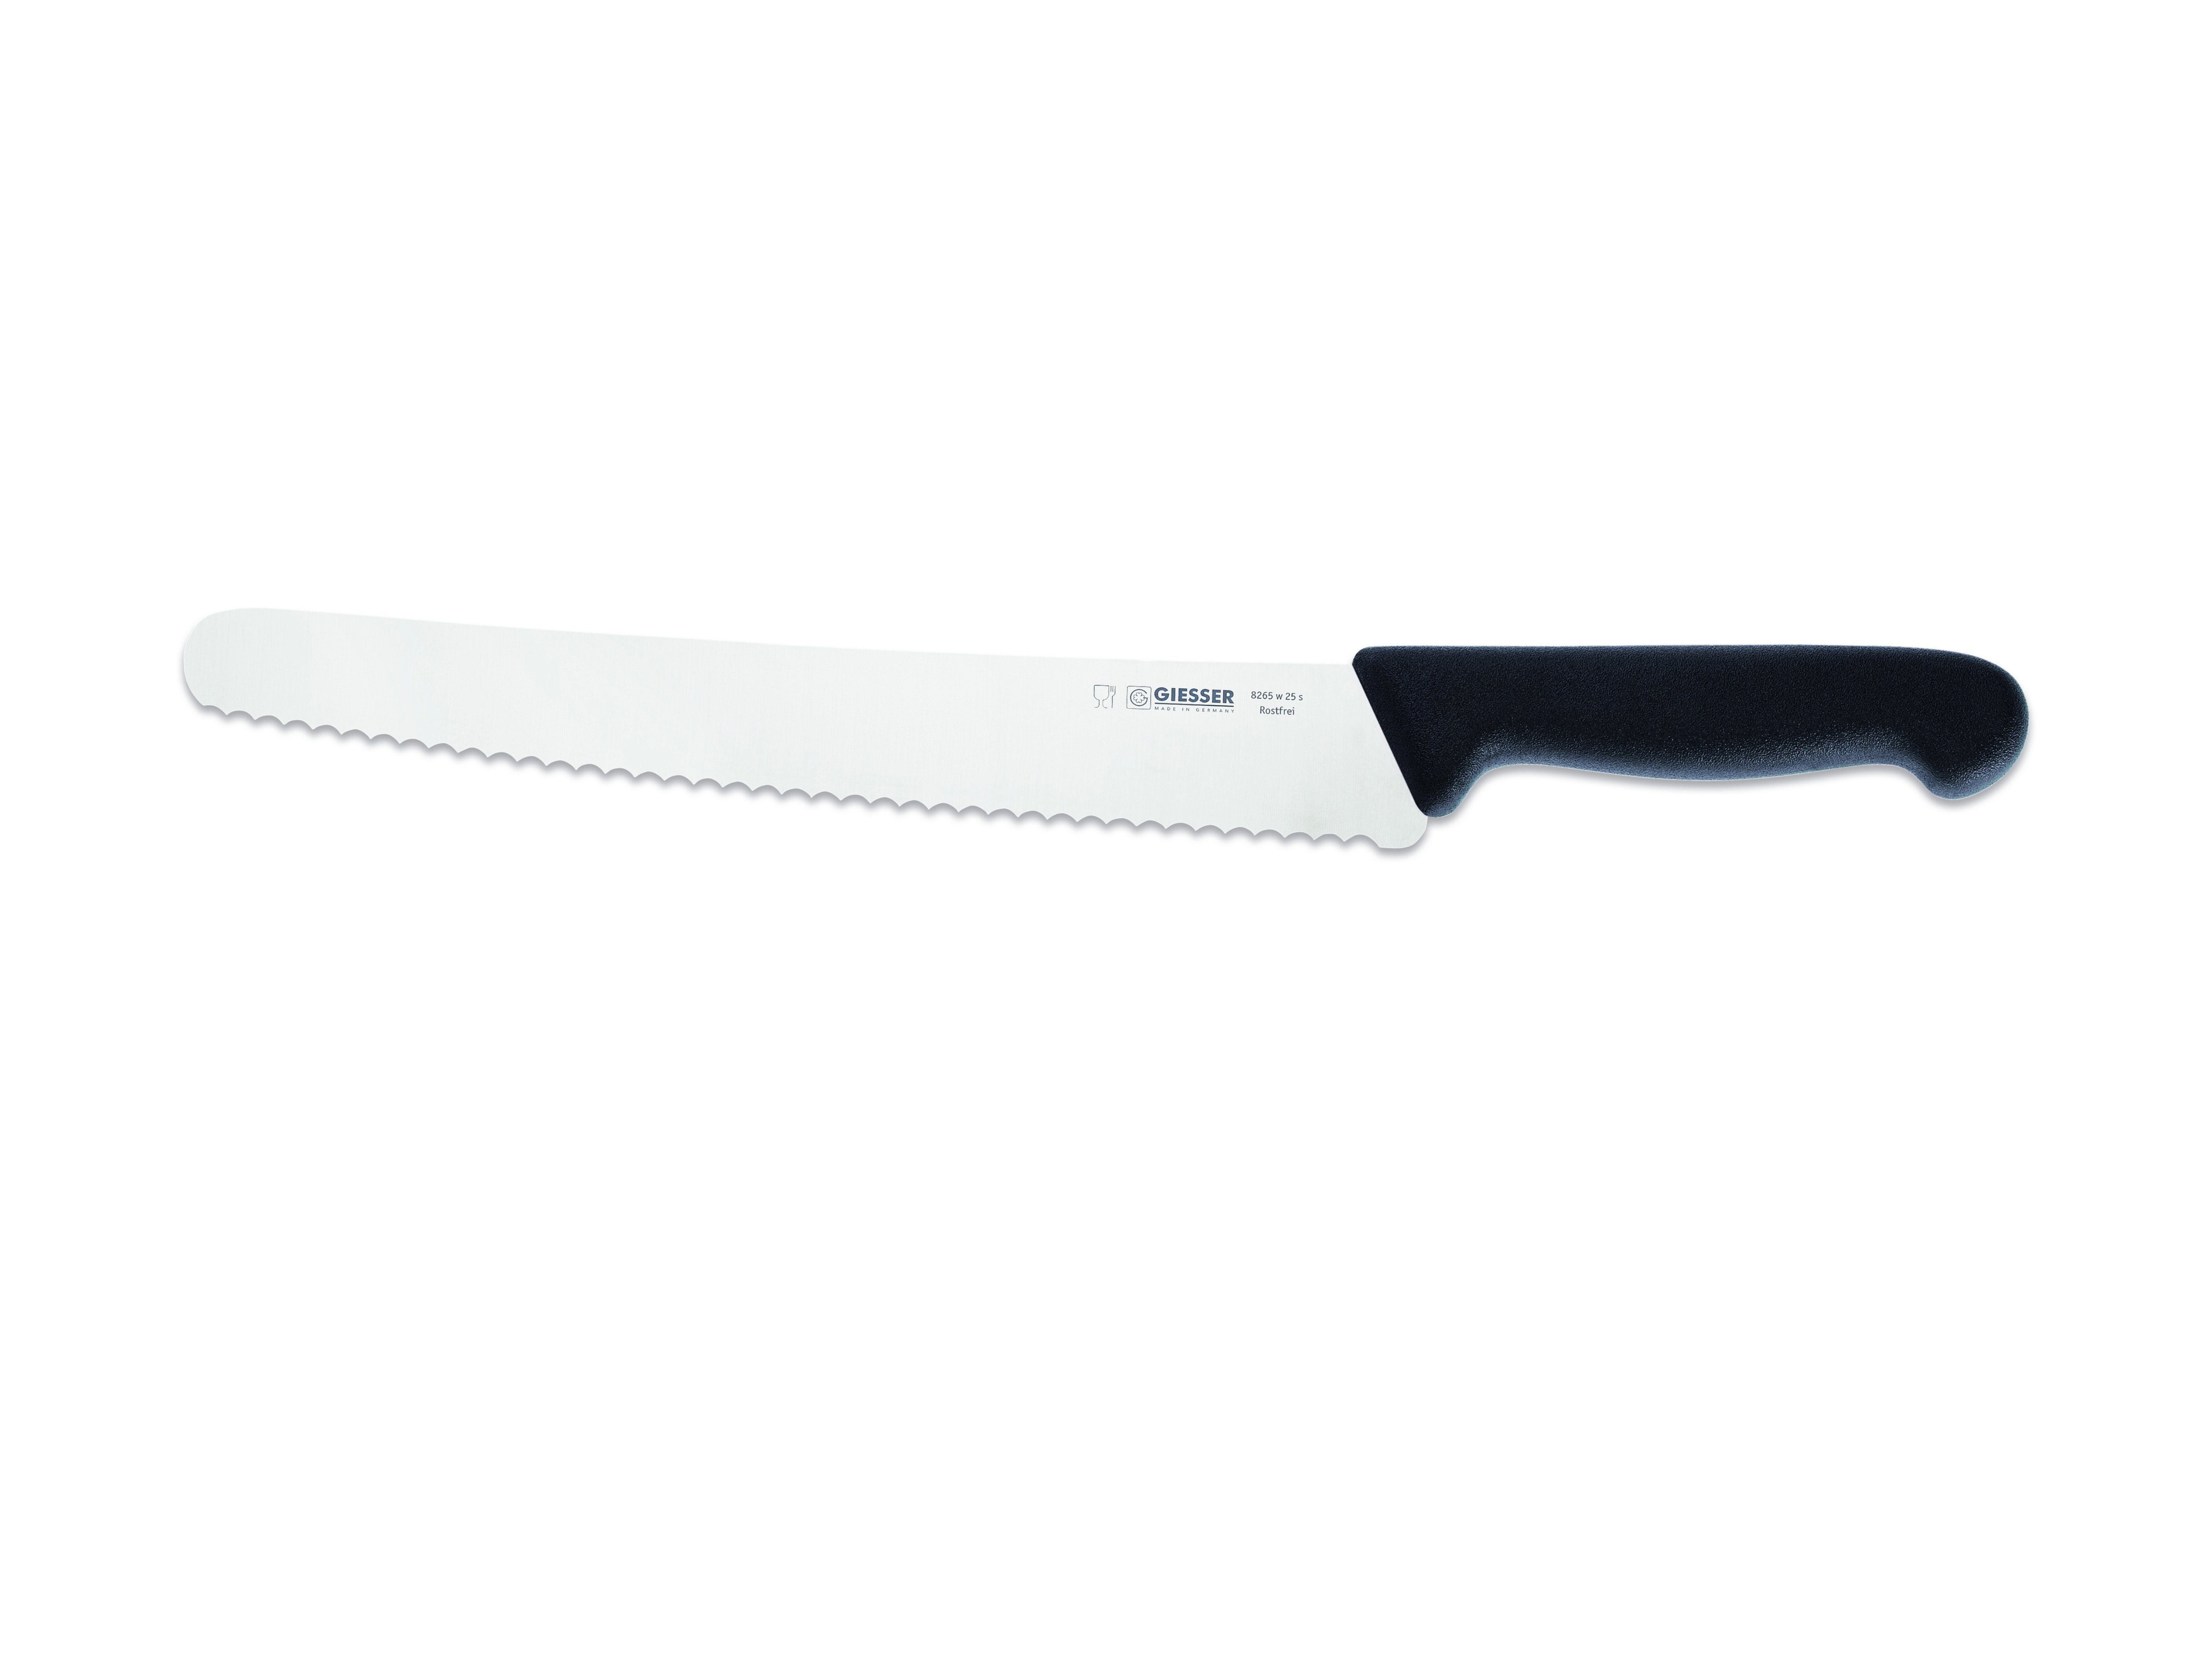 Giesser Messer Brotmesser Universalmesser 8265 w 25, kunststoffgespritzt schwarz